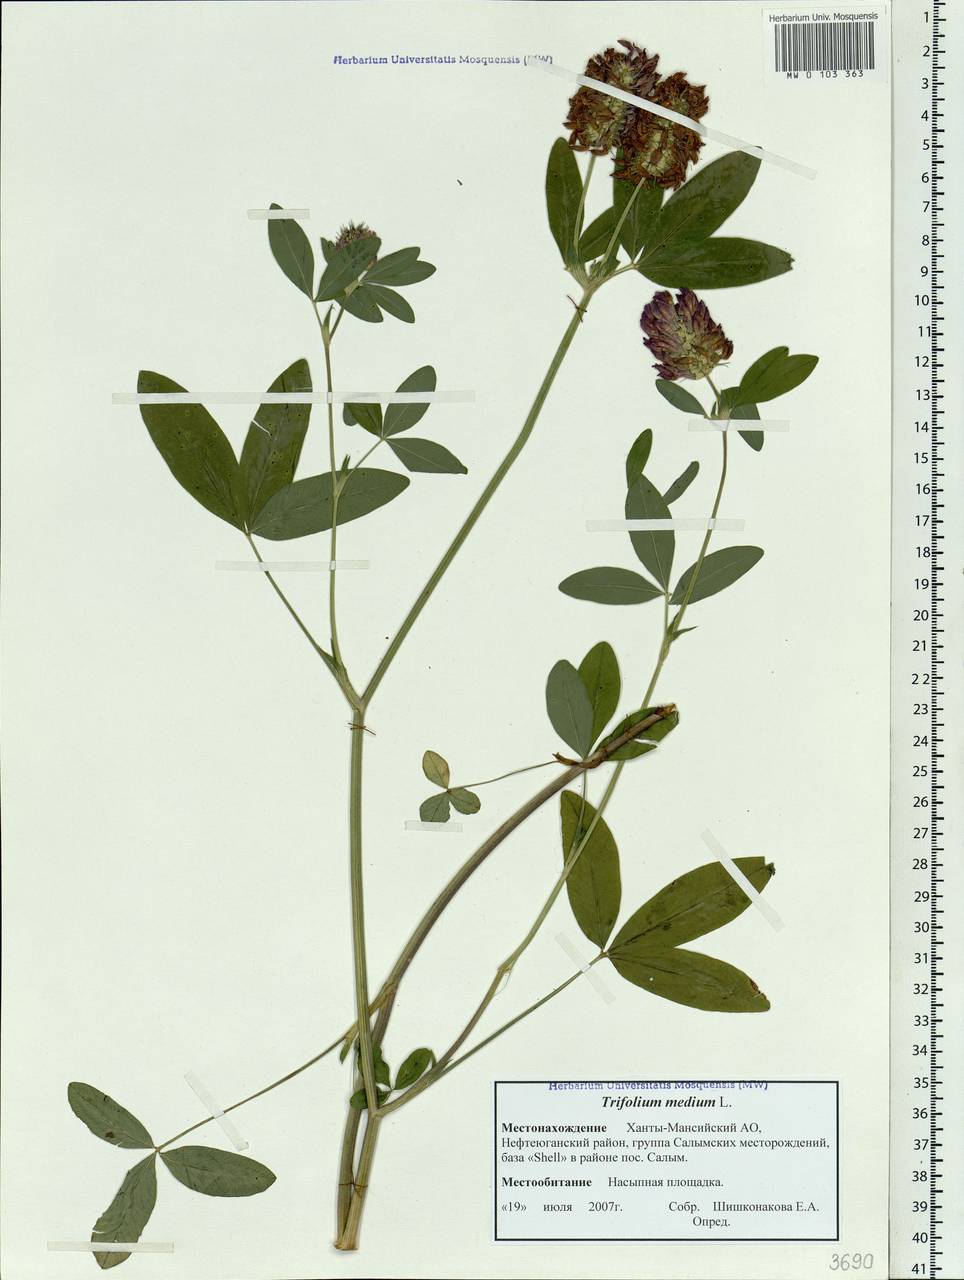 Trifolium medium L., Siberia, Western Siberia (S1) (Russia)